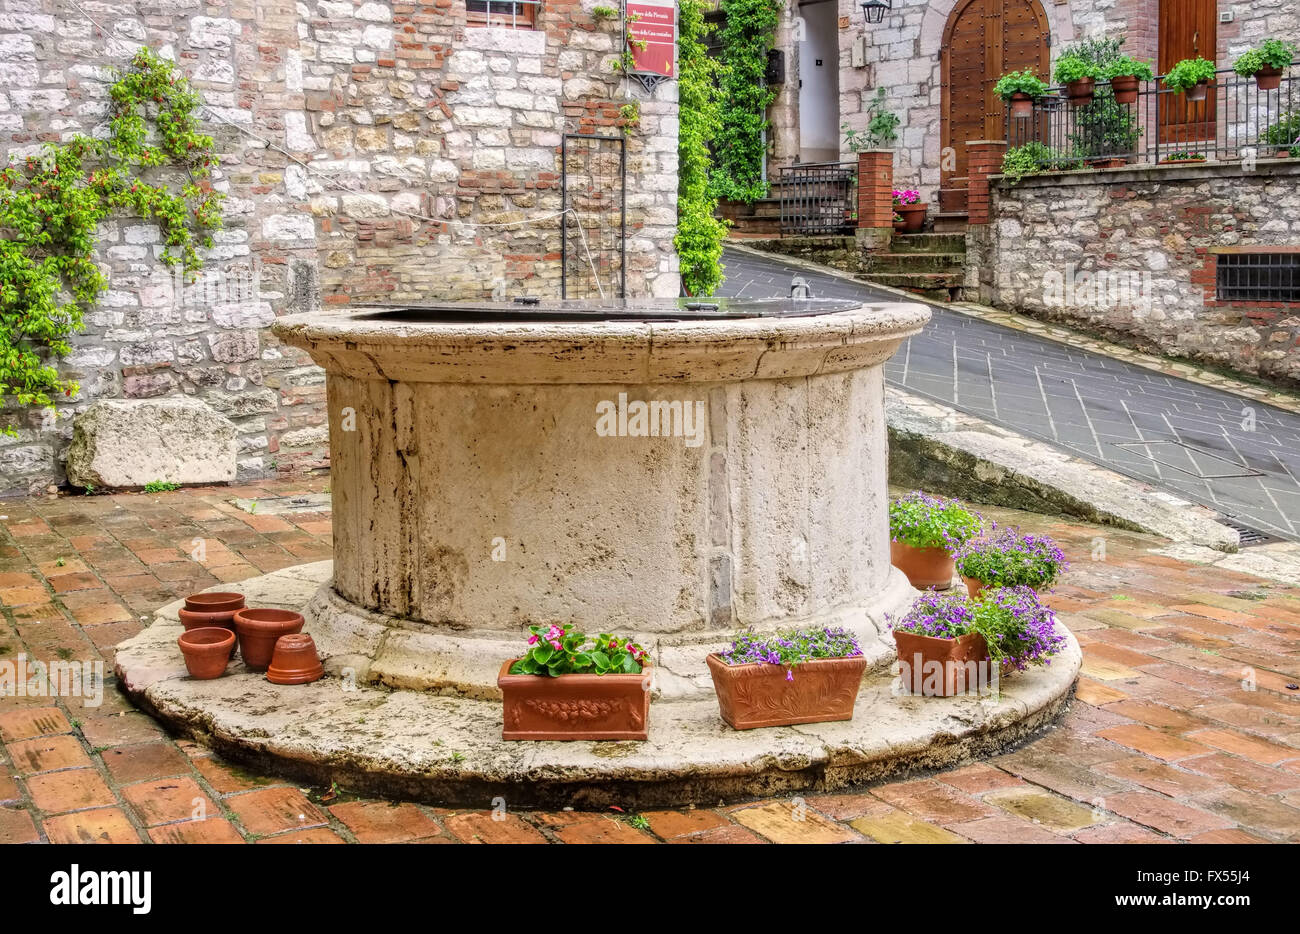 Dans Umnrien Corciano, alter Brunnen - Corciano en Ombrie, ancien puits Banque D'Images